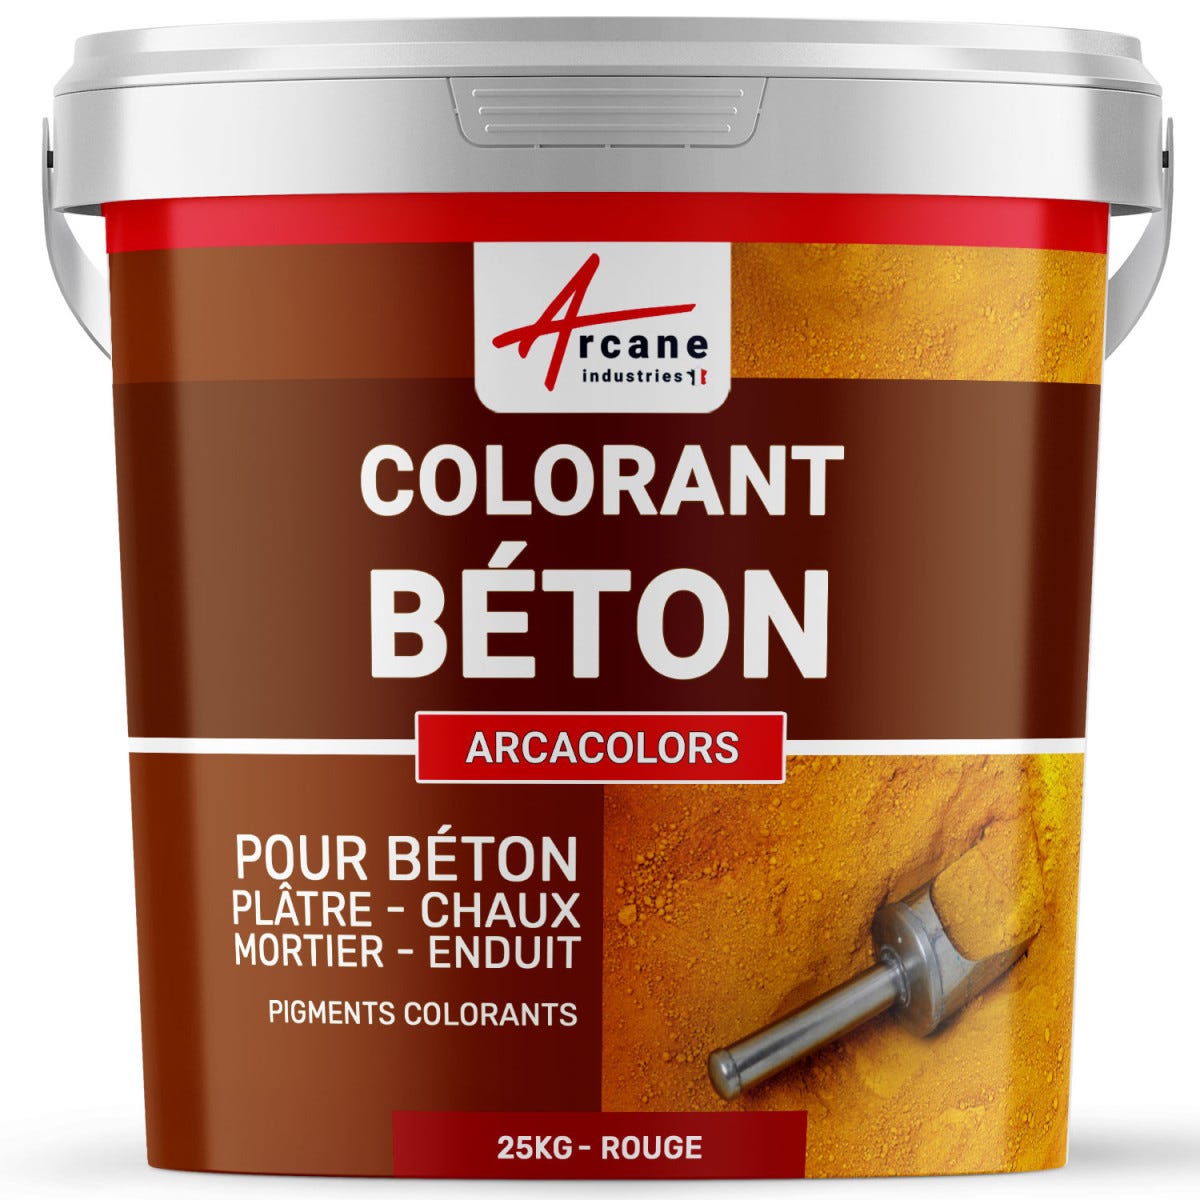 Pigments Colorants Premium pour enduit, béton, mortier, chaux, platre - ARCACOLORS - 25 kg - Rouge - ARCANE INDUSTRIES 2